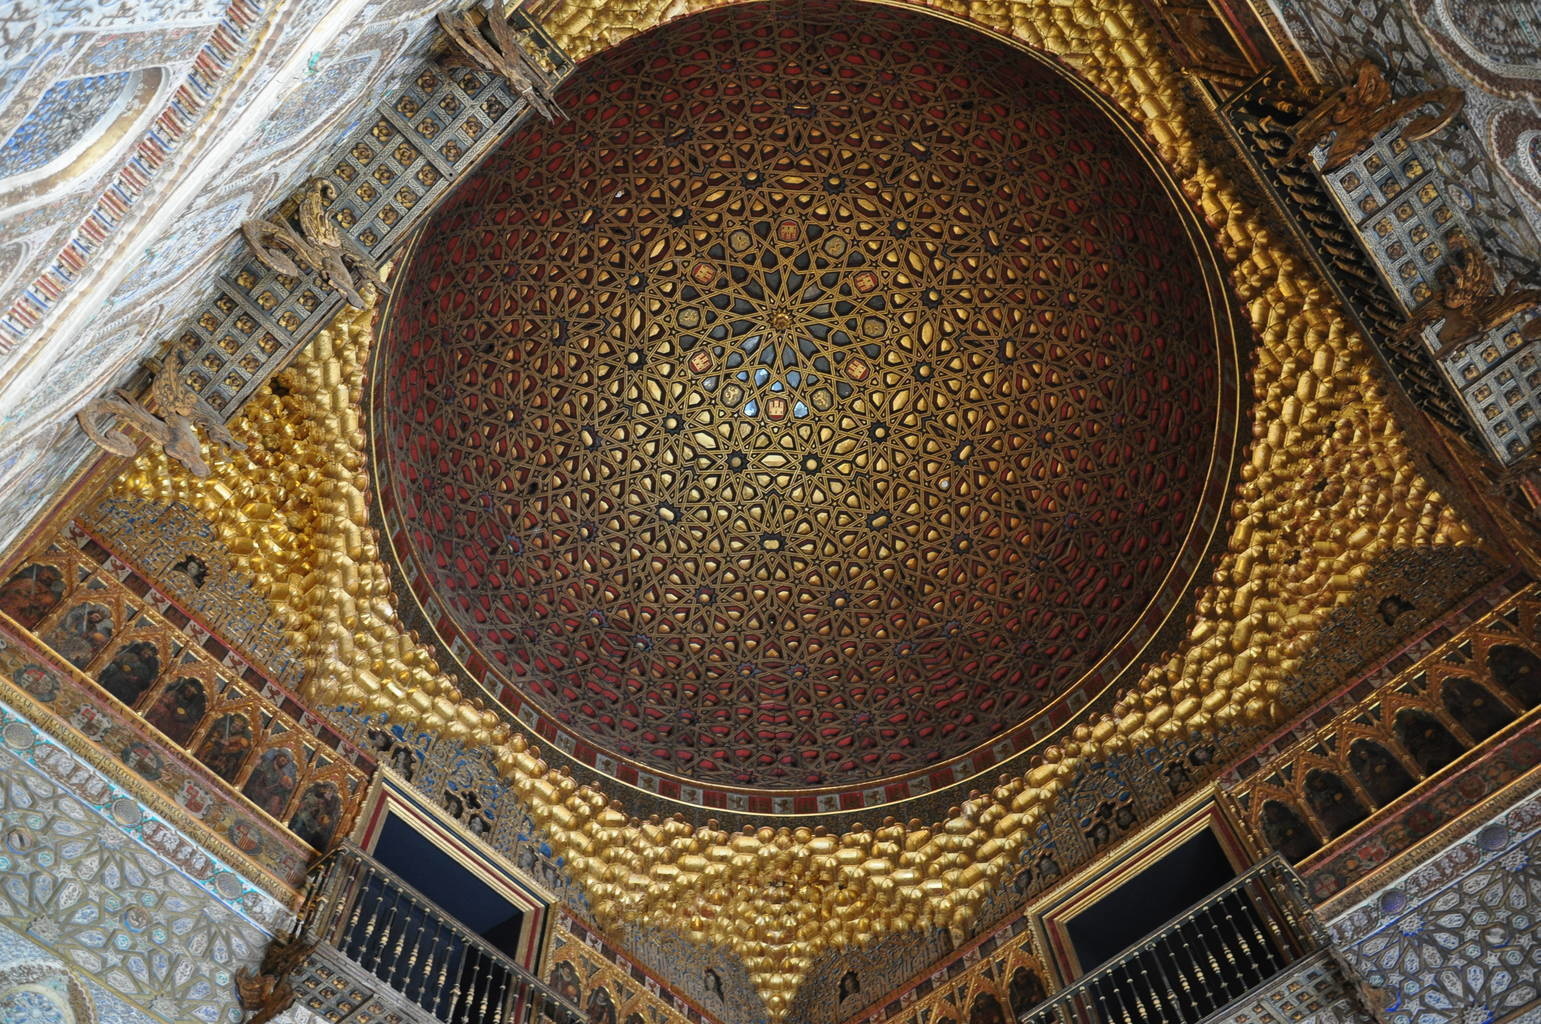 塞维亚王宫 (The Alcázar of Seville), 西班牙